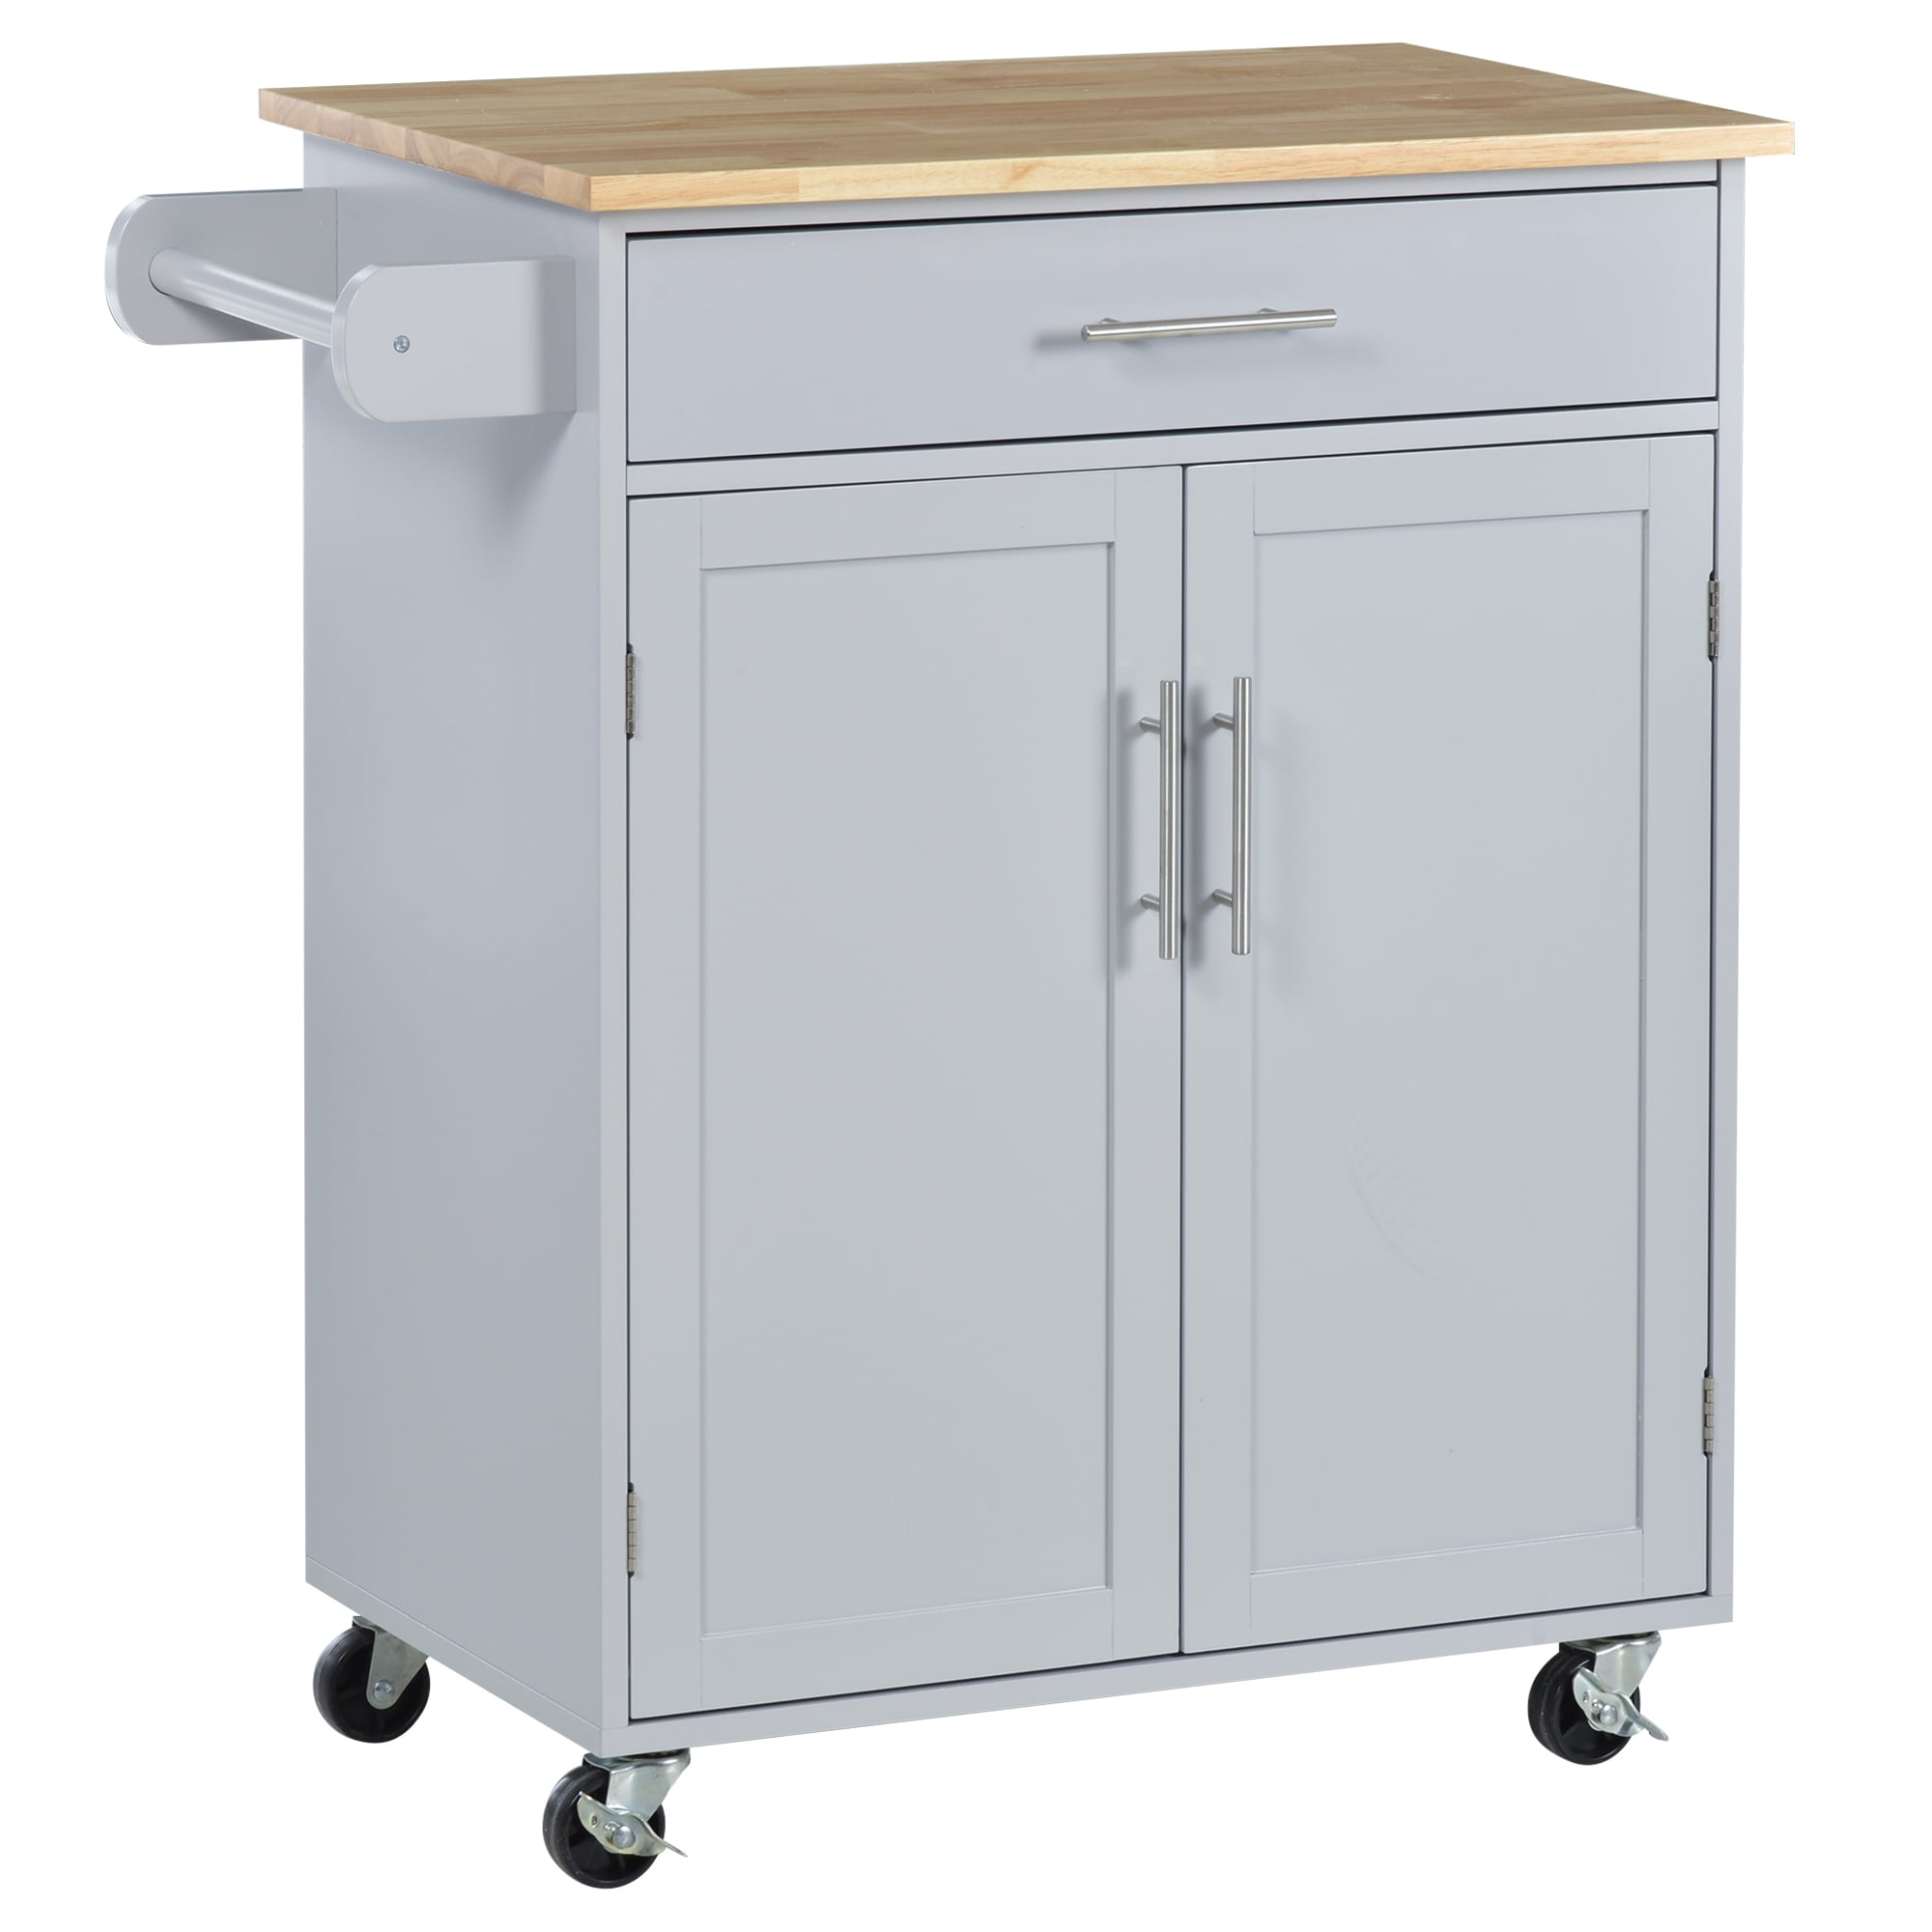 Modern Kitchen Storage Cabinet On Wheels 